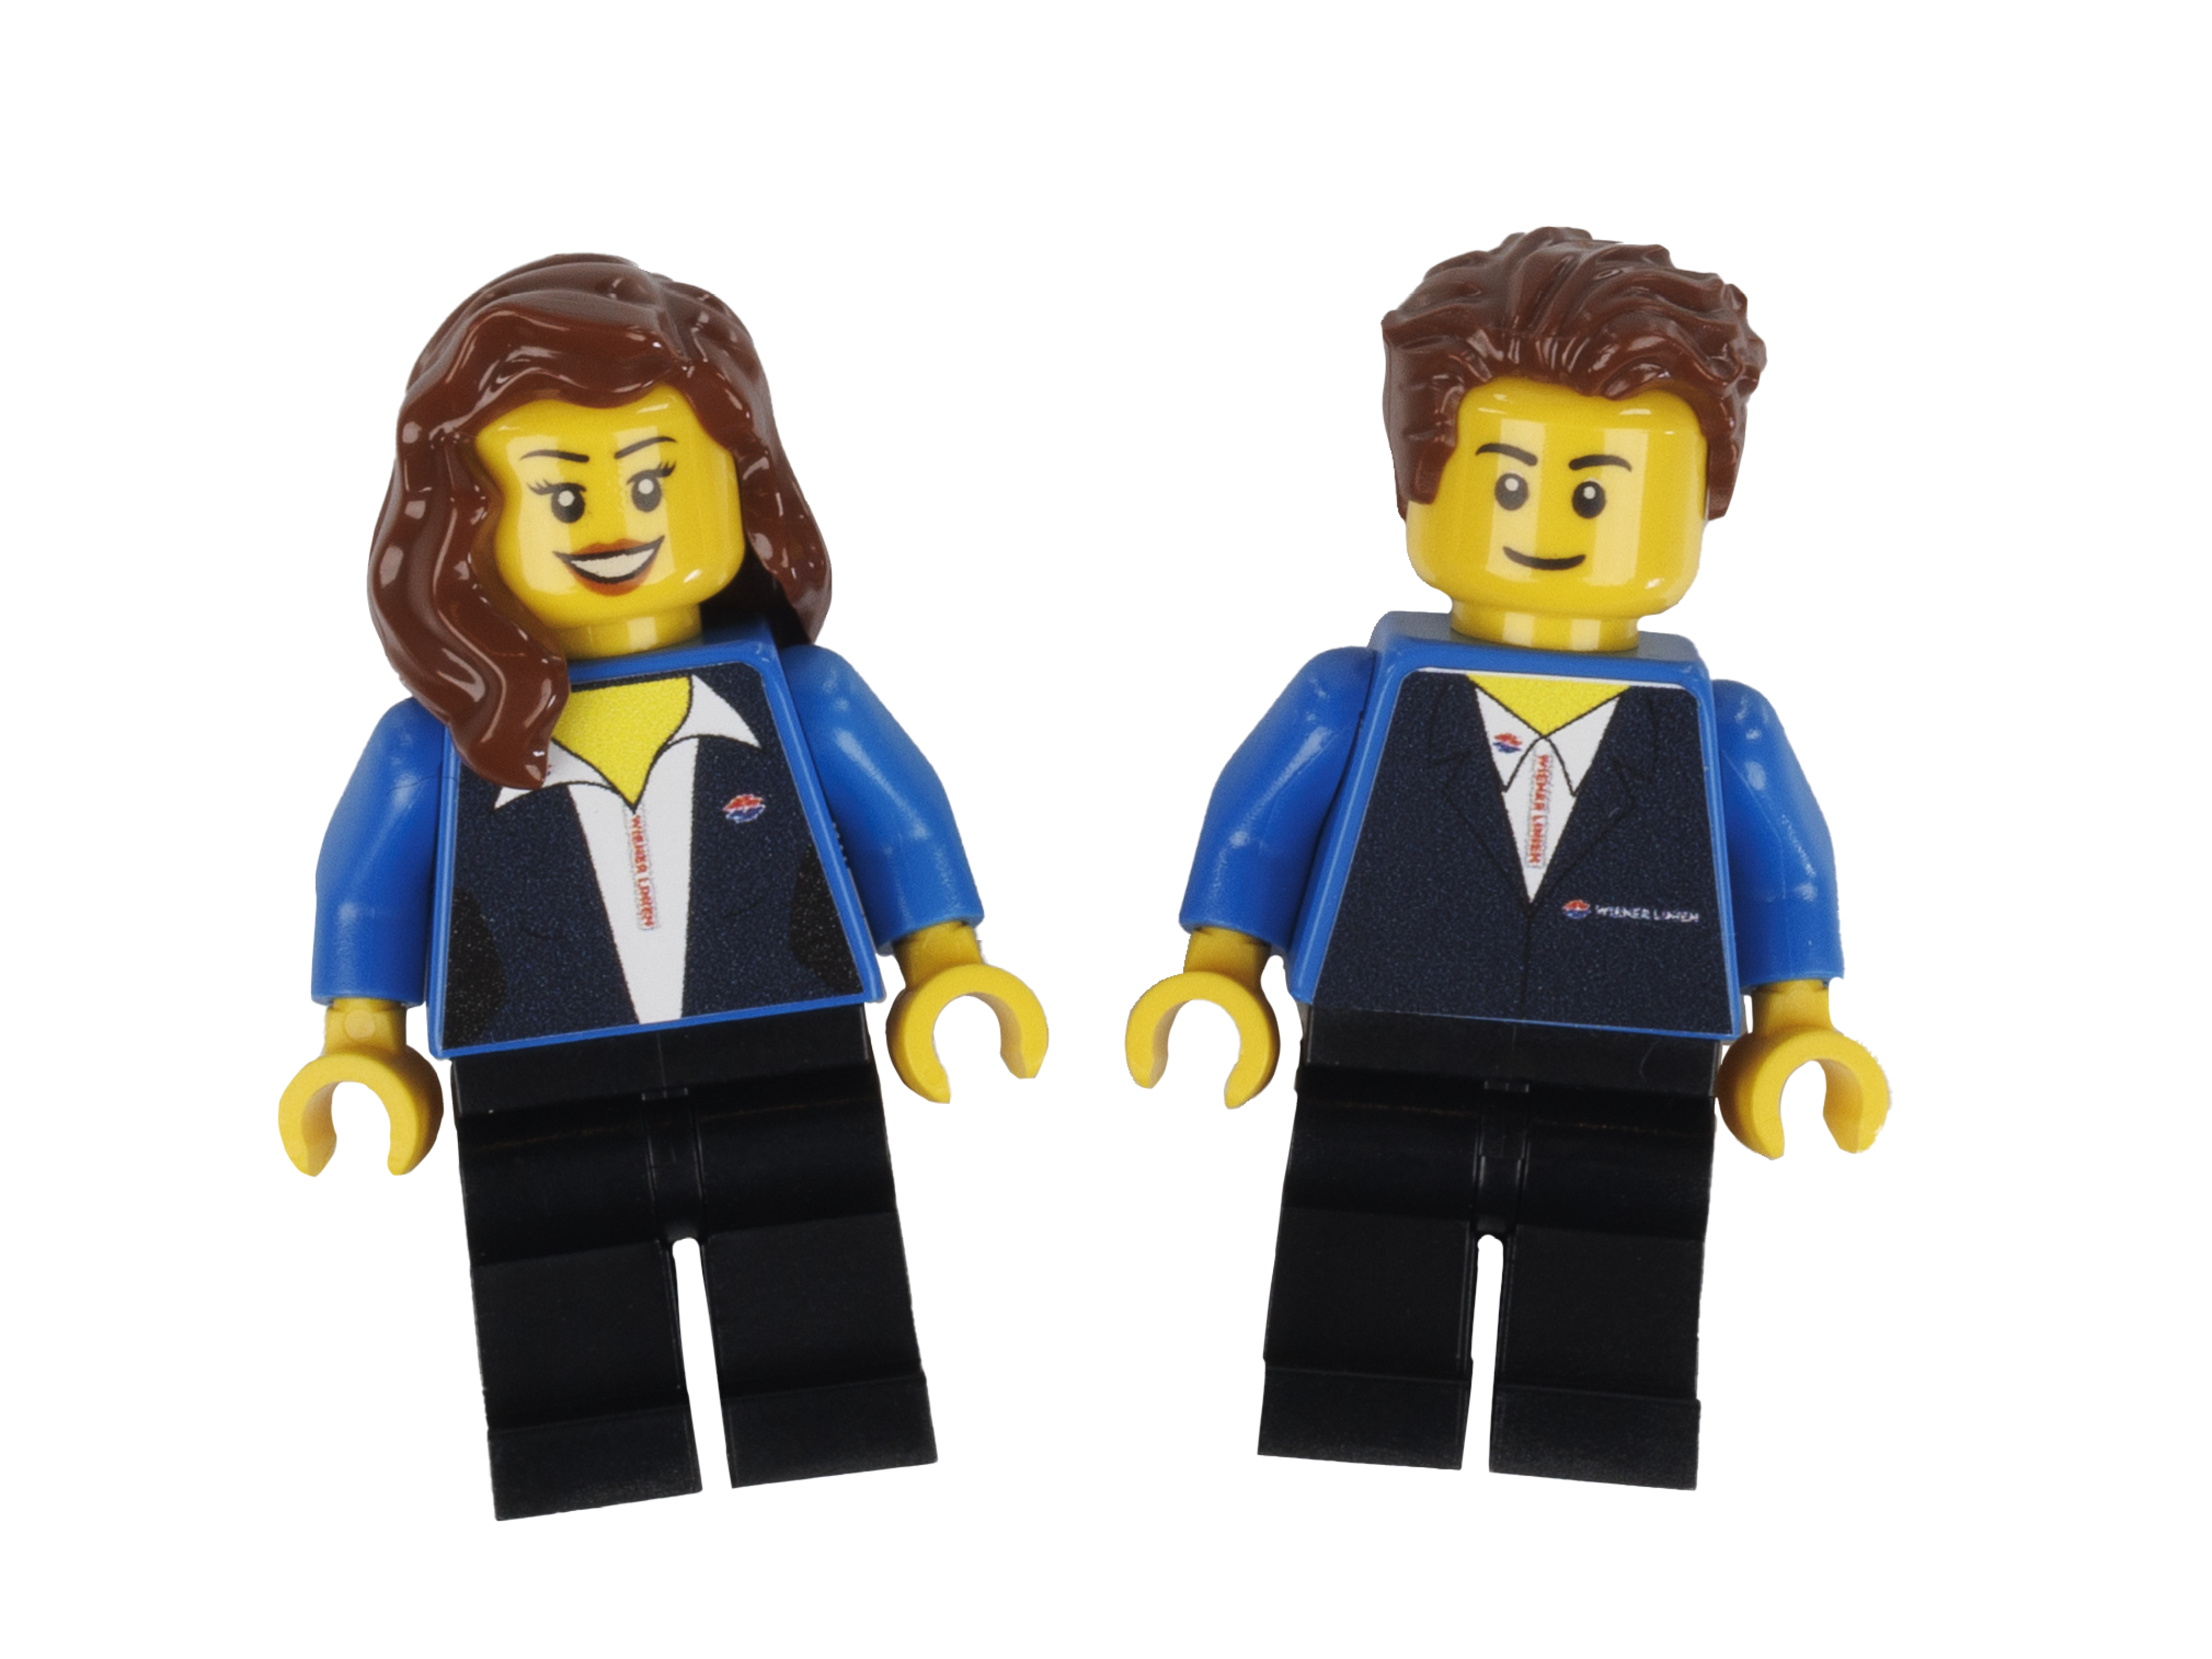 Figuren Wiener Linien Mitarbeiter*innen aus LEGO®